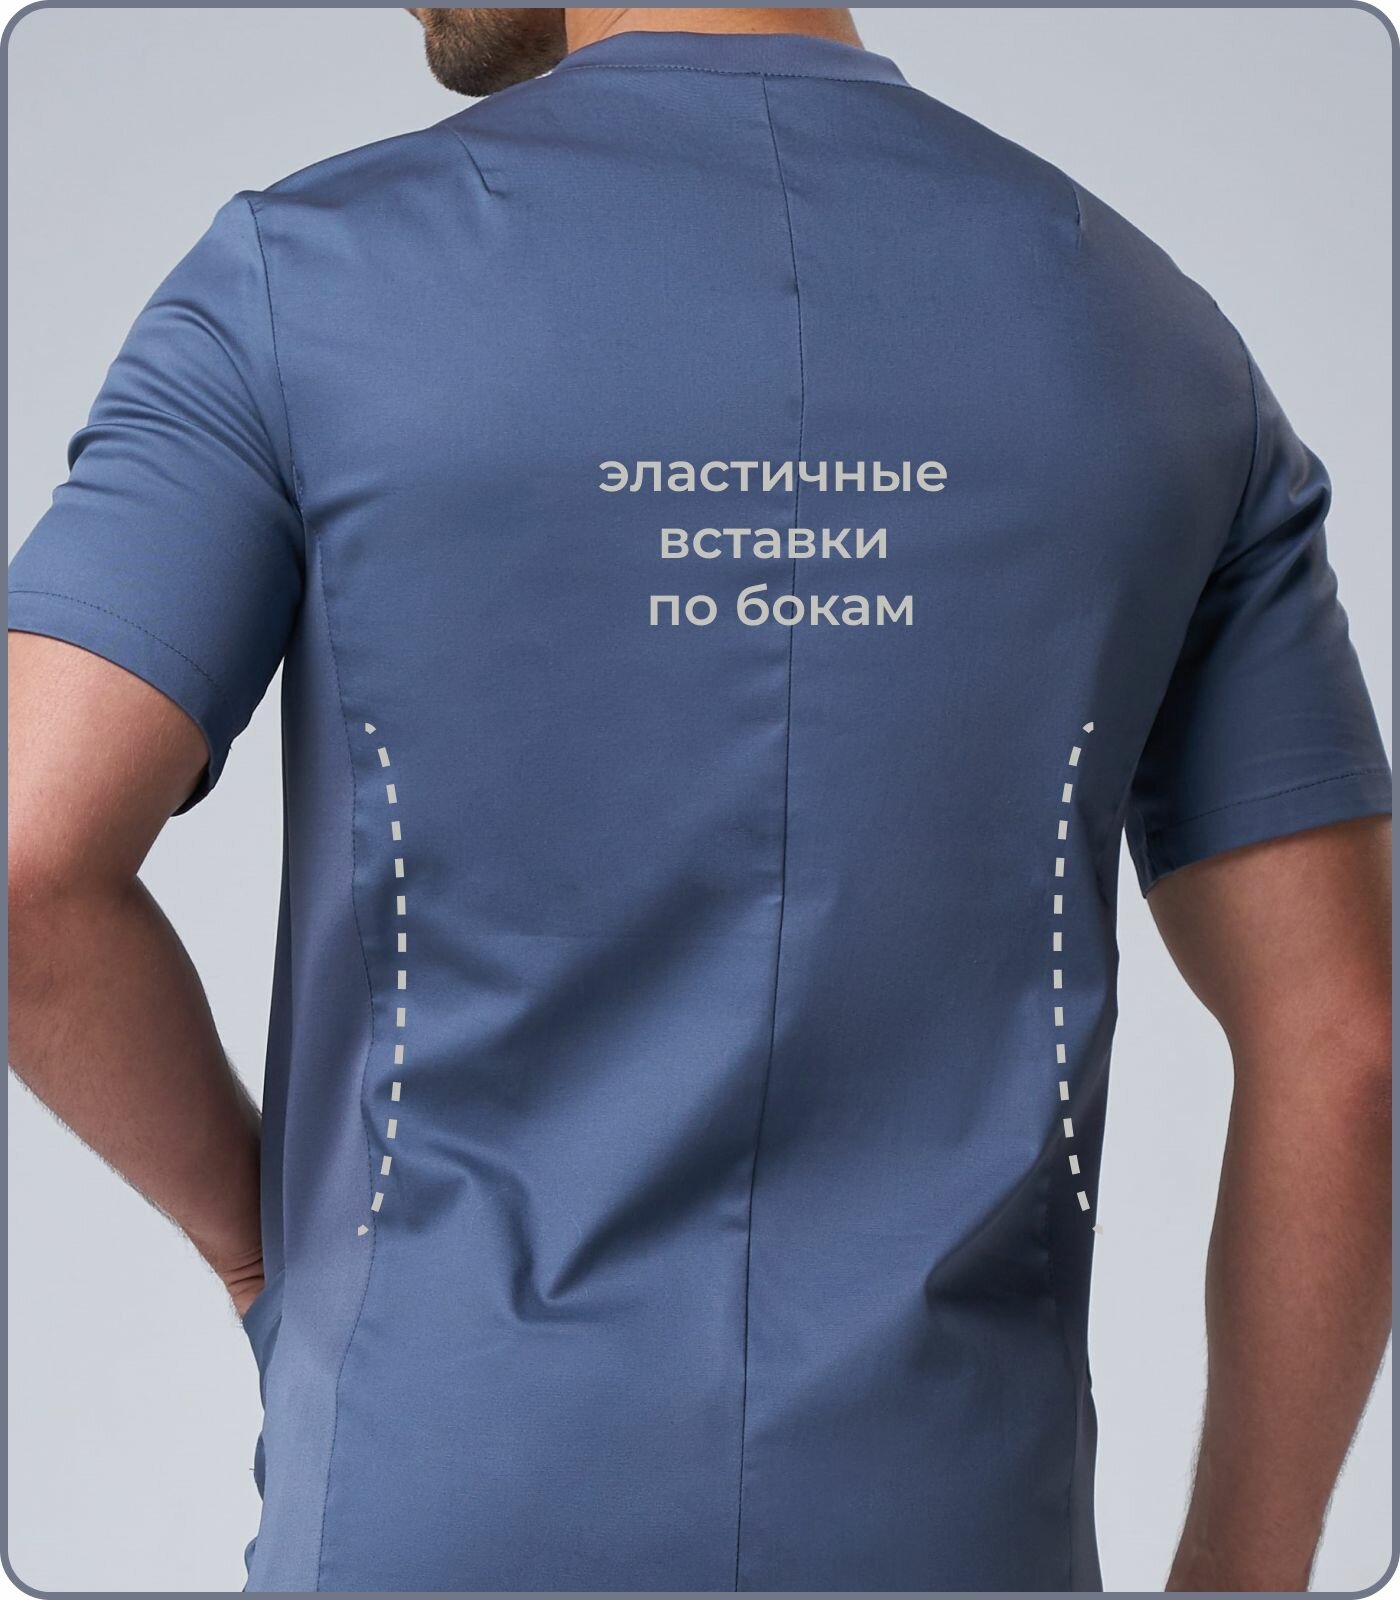 Костюм медицинский хирургический мужской серый с эластичными вставками Куртка Брюки размер 60